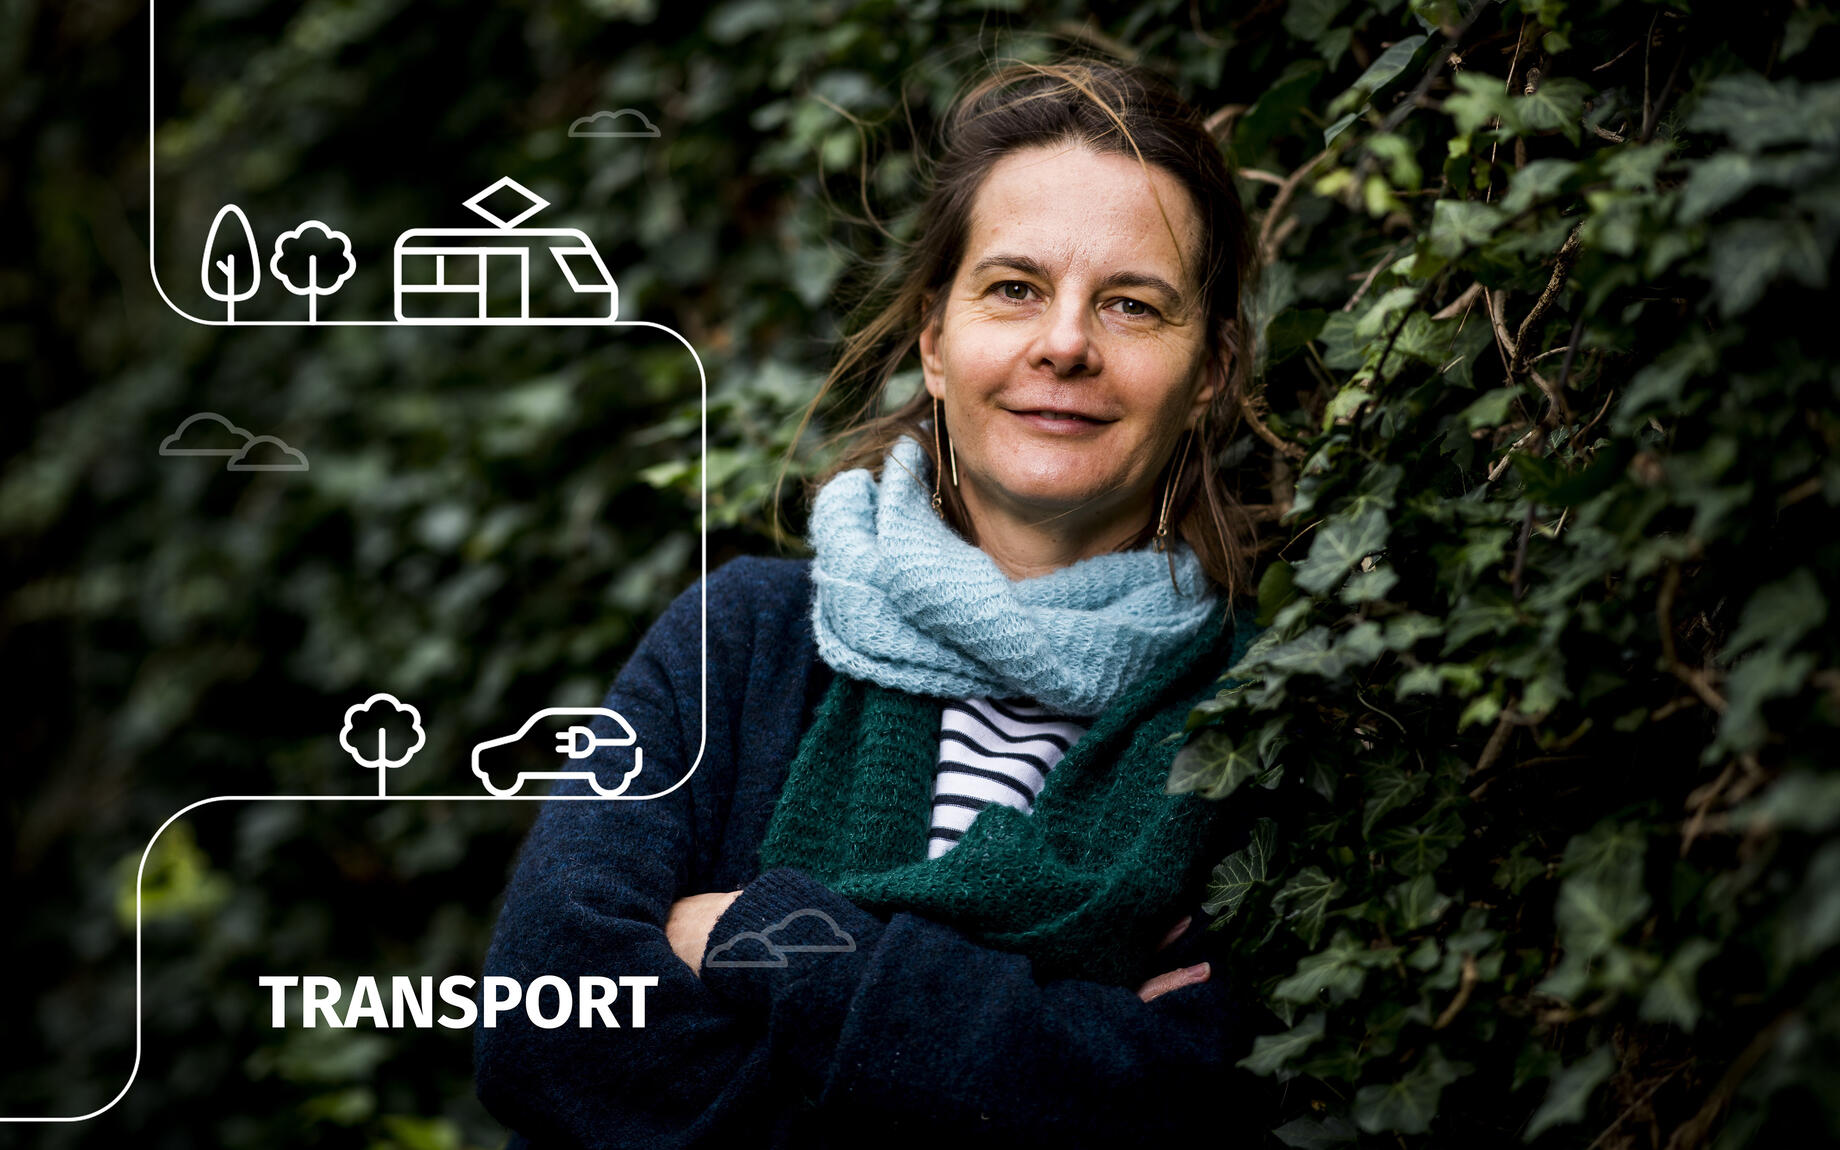 Klimaatplan blog transport met Cathy Macharis